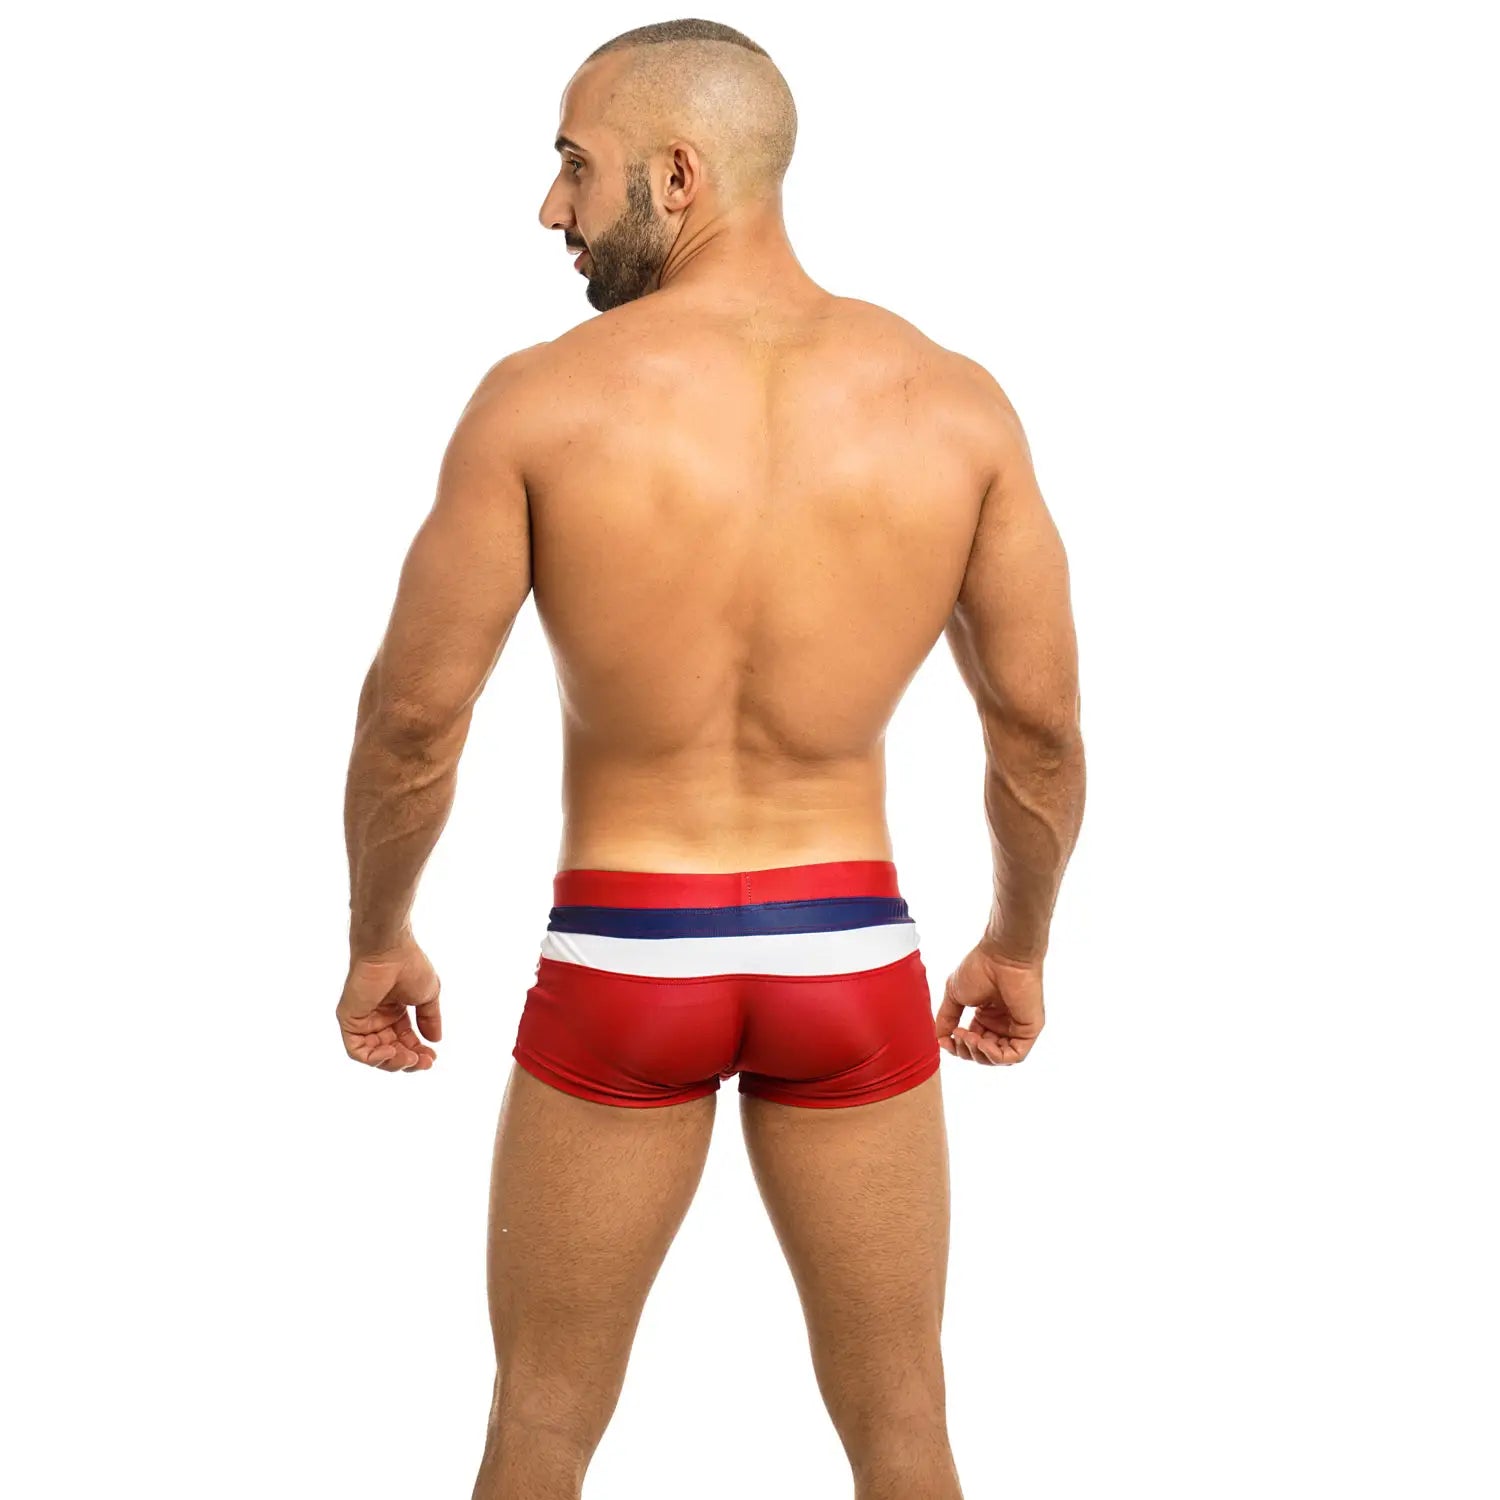 Lovemi - Boxer shorts men